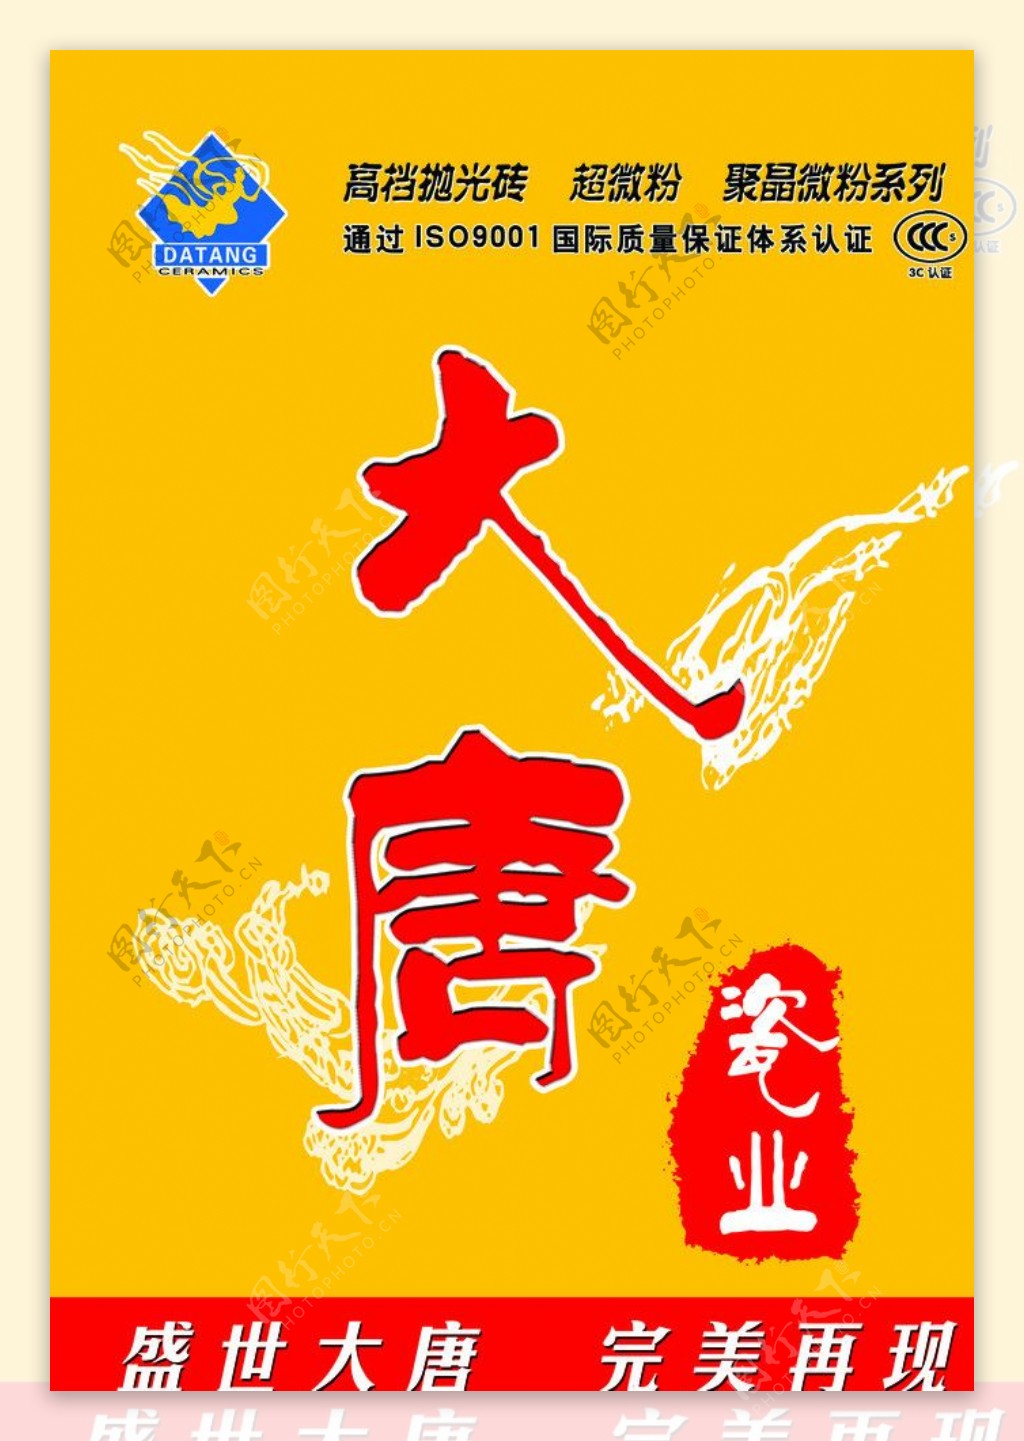 大唐瓷业海报图片